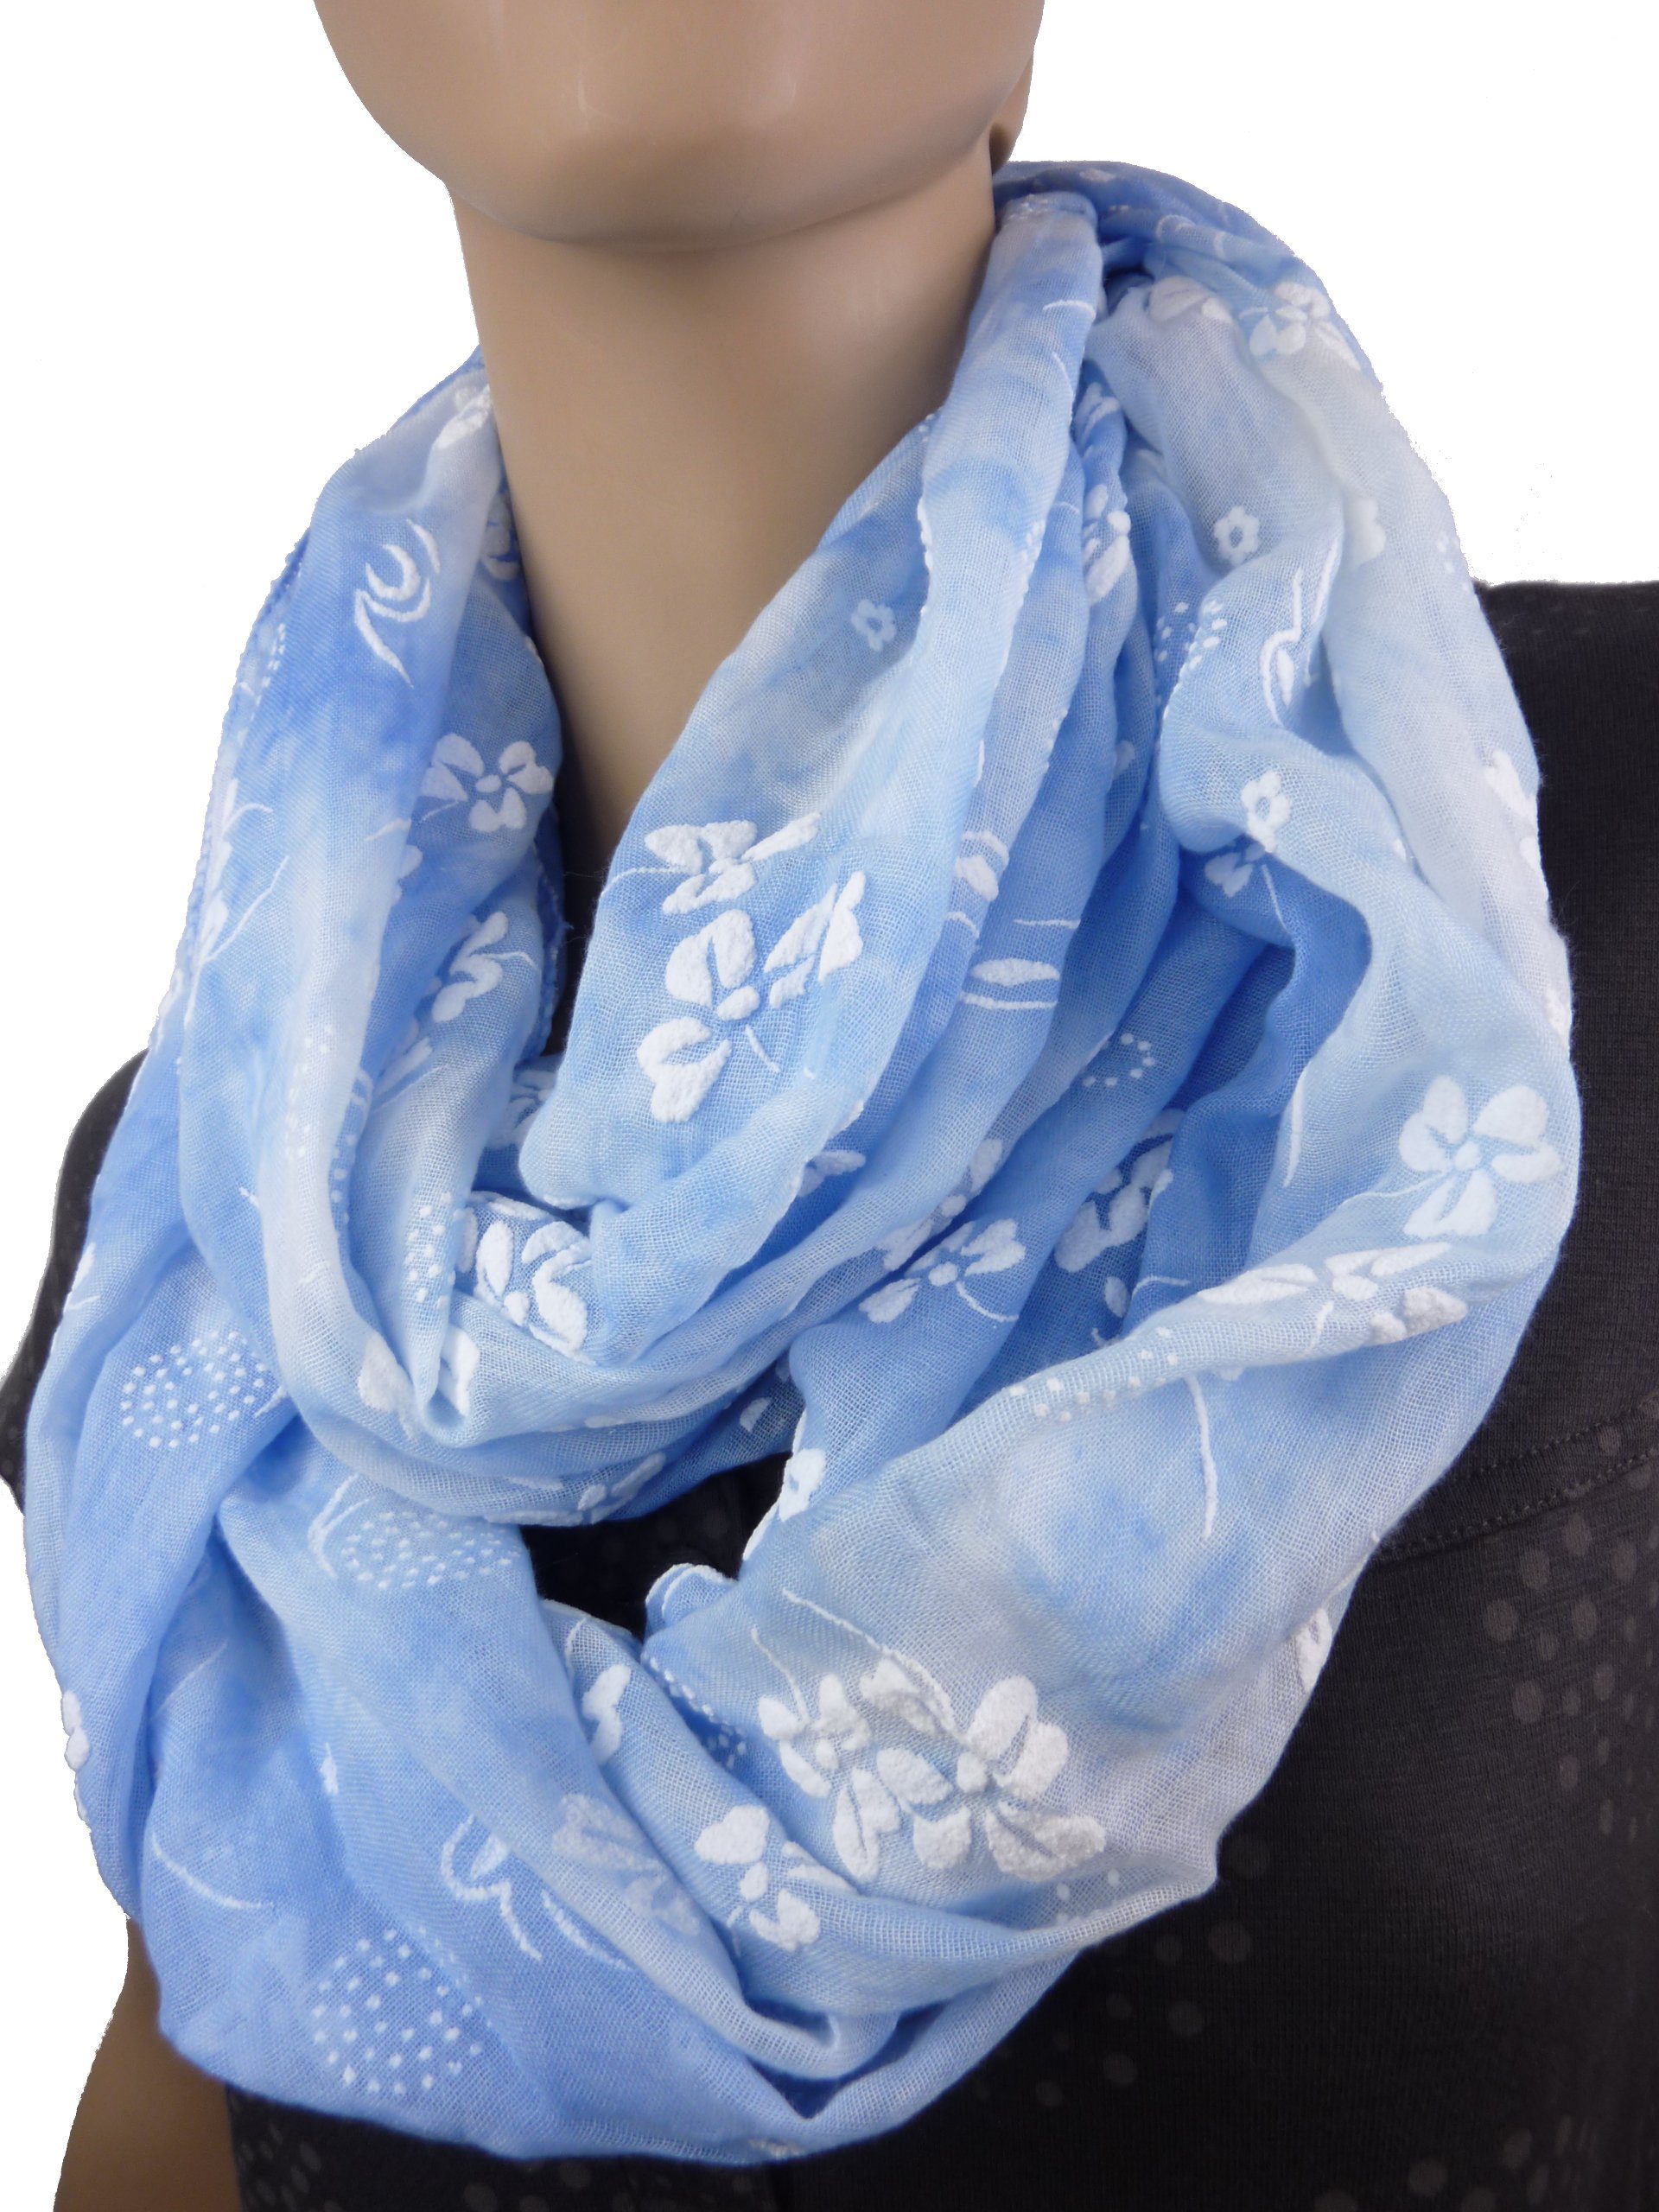 Taschen4life Loop leichter babyblau Schal Damen Blumen Farben, 0112, Loop Schlauchschal Muster, pastell